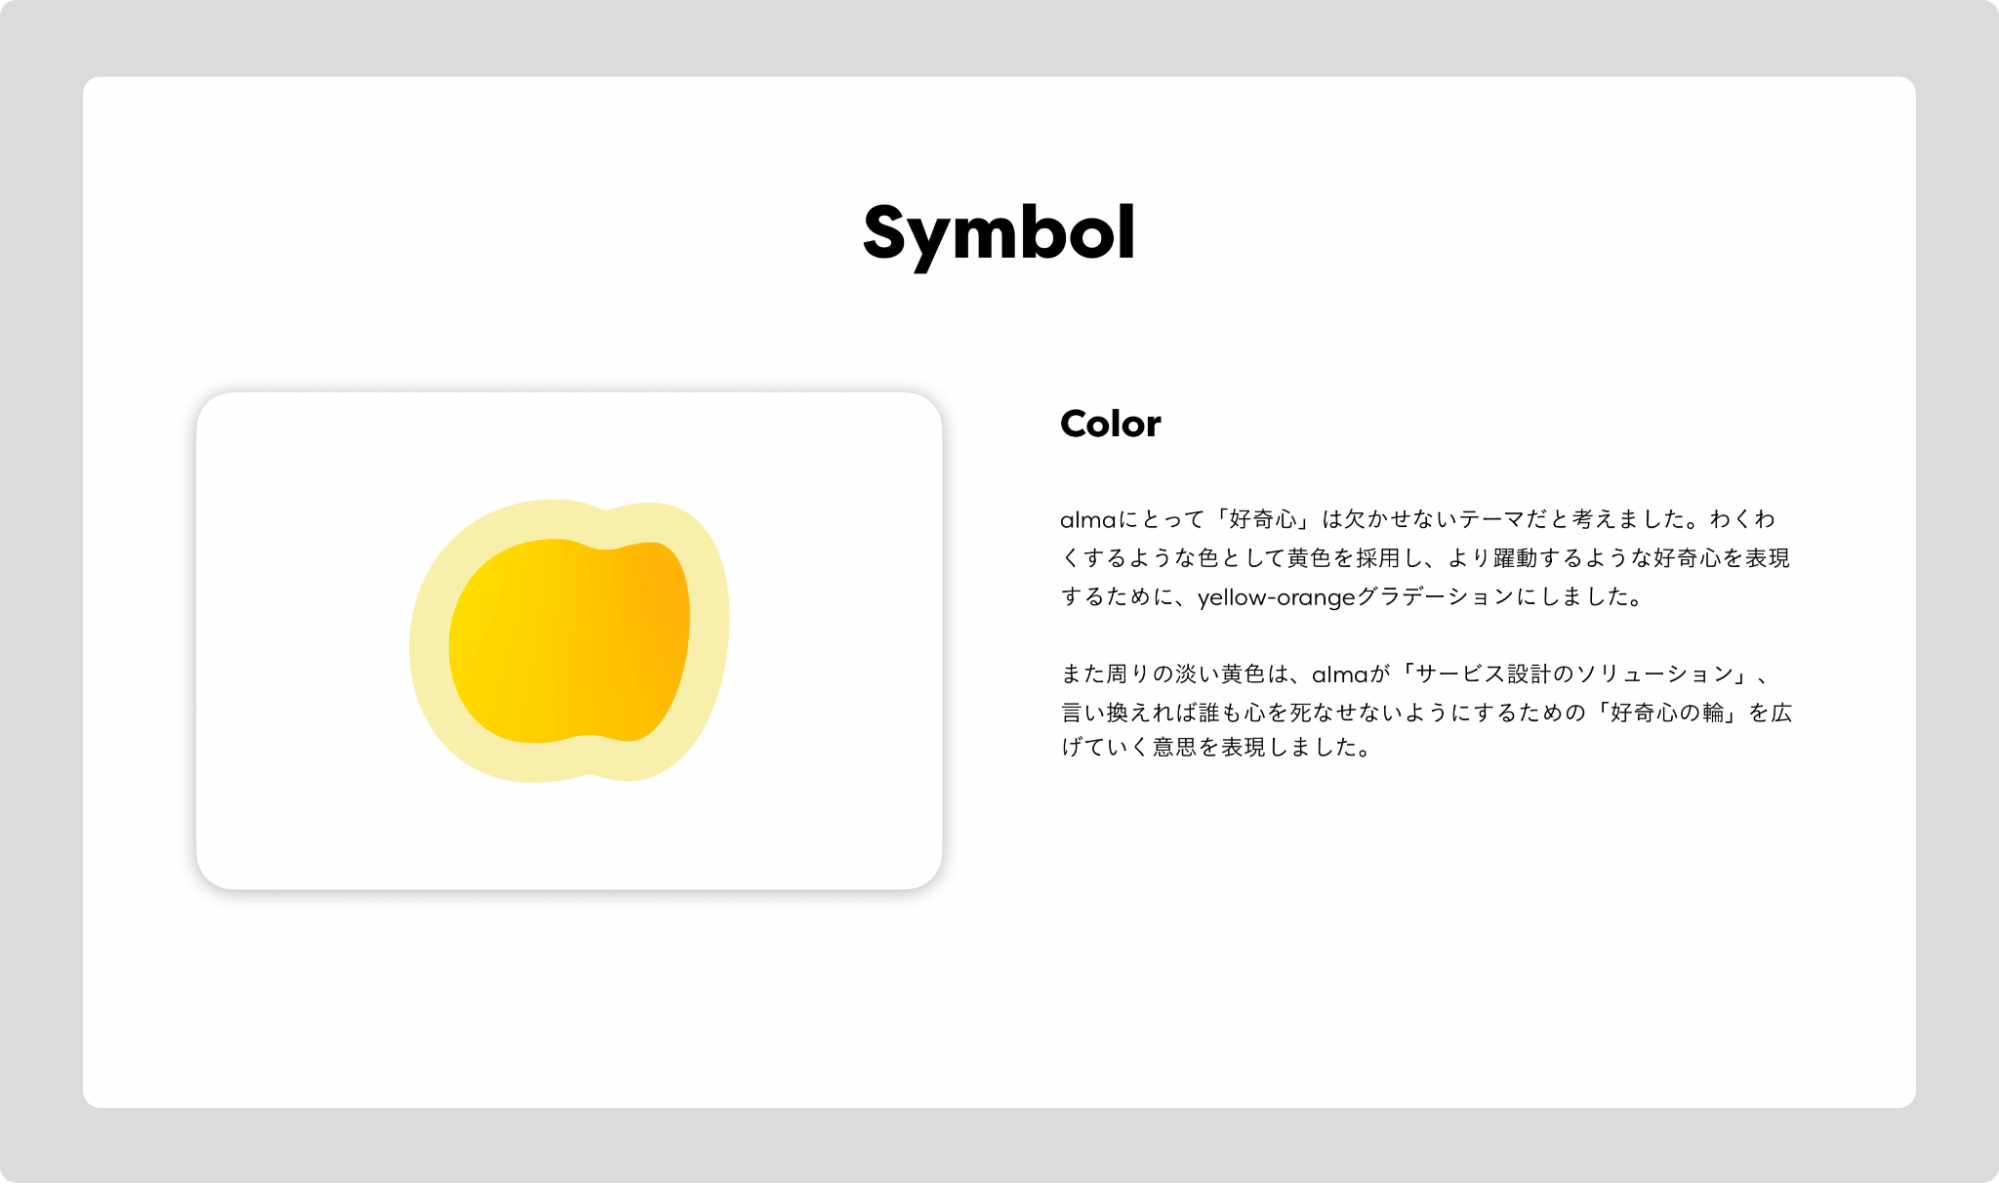 Symbol。Color。almaにとって「好奇心」は欠かせないテーマだと考えました。わくわくするような色として黄色を採用し、より躍動するような好奇心をひょうげんするために、yellow-orangeをグラデーションにしました。また周りの淡い黄色は、almaが「サービス設計のソリューション」、言い換えれば誰も心を死なせないようにするための「好奇心の輪」を広げていく意思を表現しました。